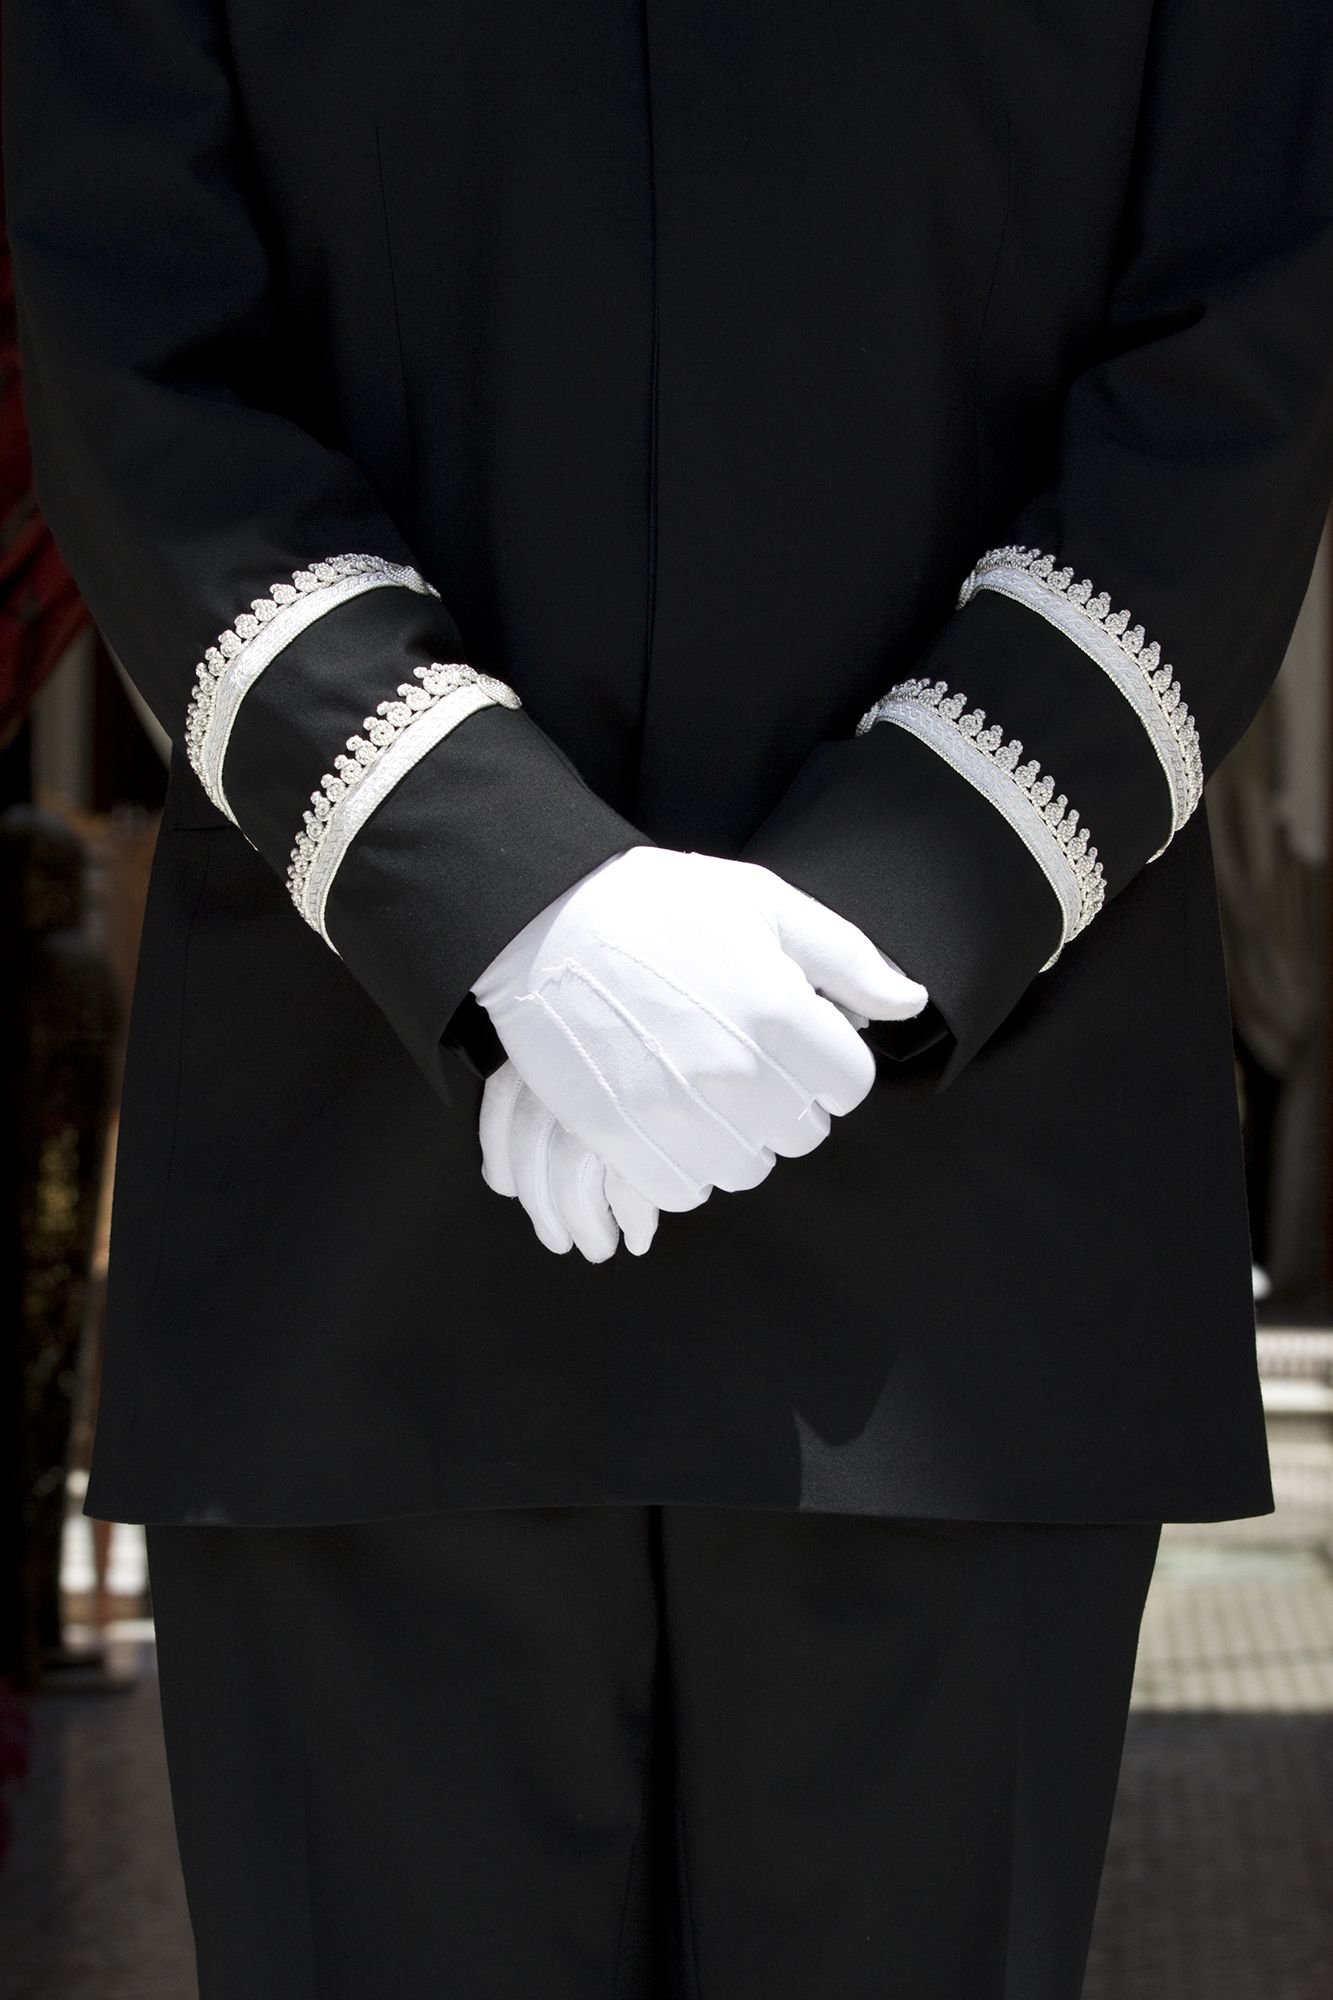 Butler di industri perhotelan mengenakan seragam hitam dan sarung tangan putih